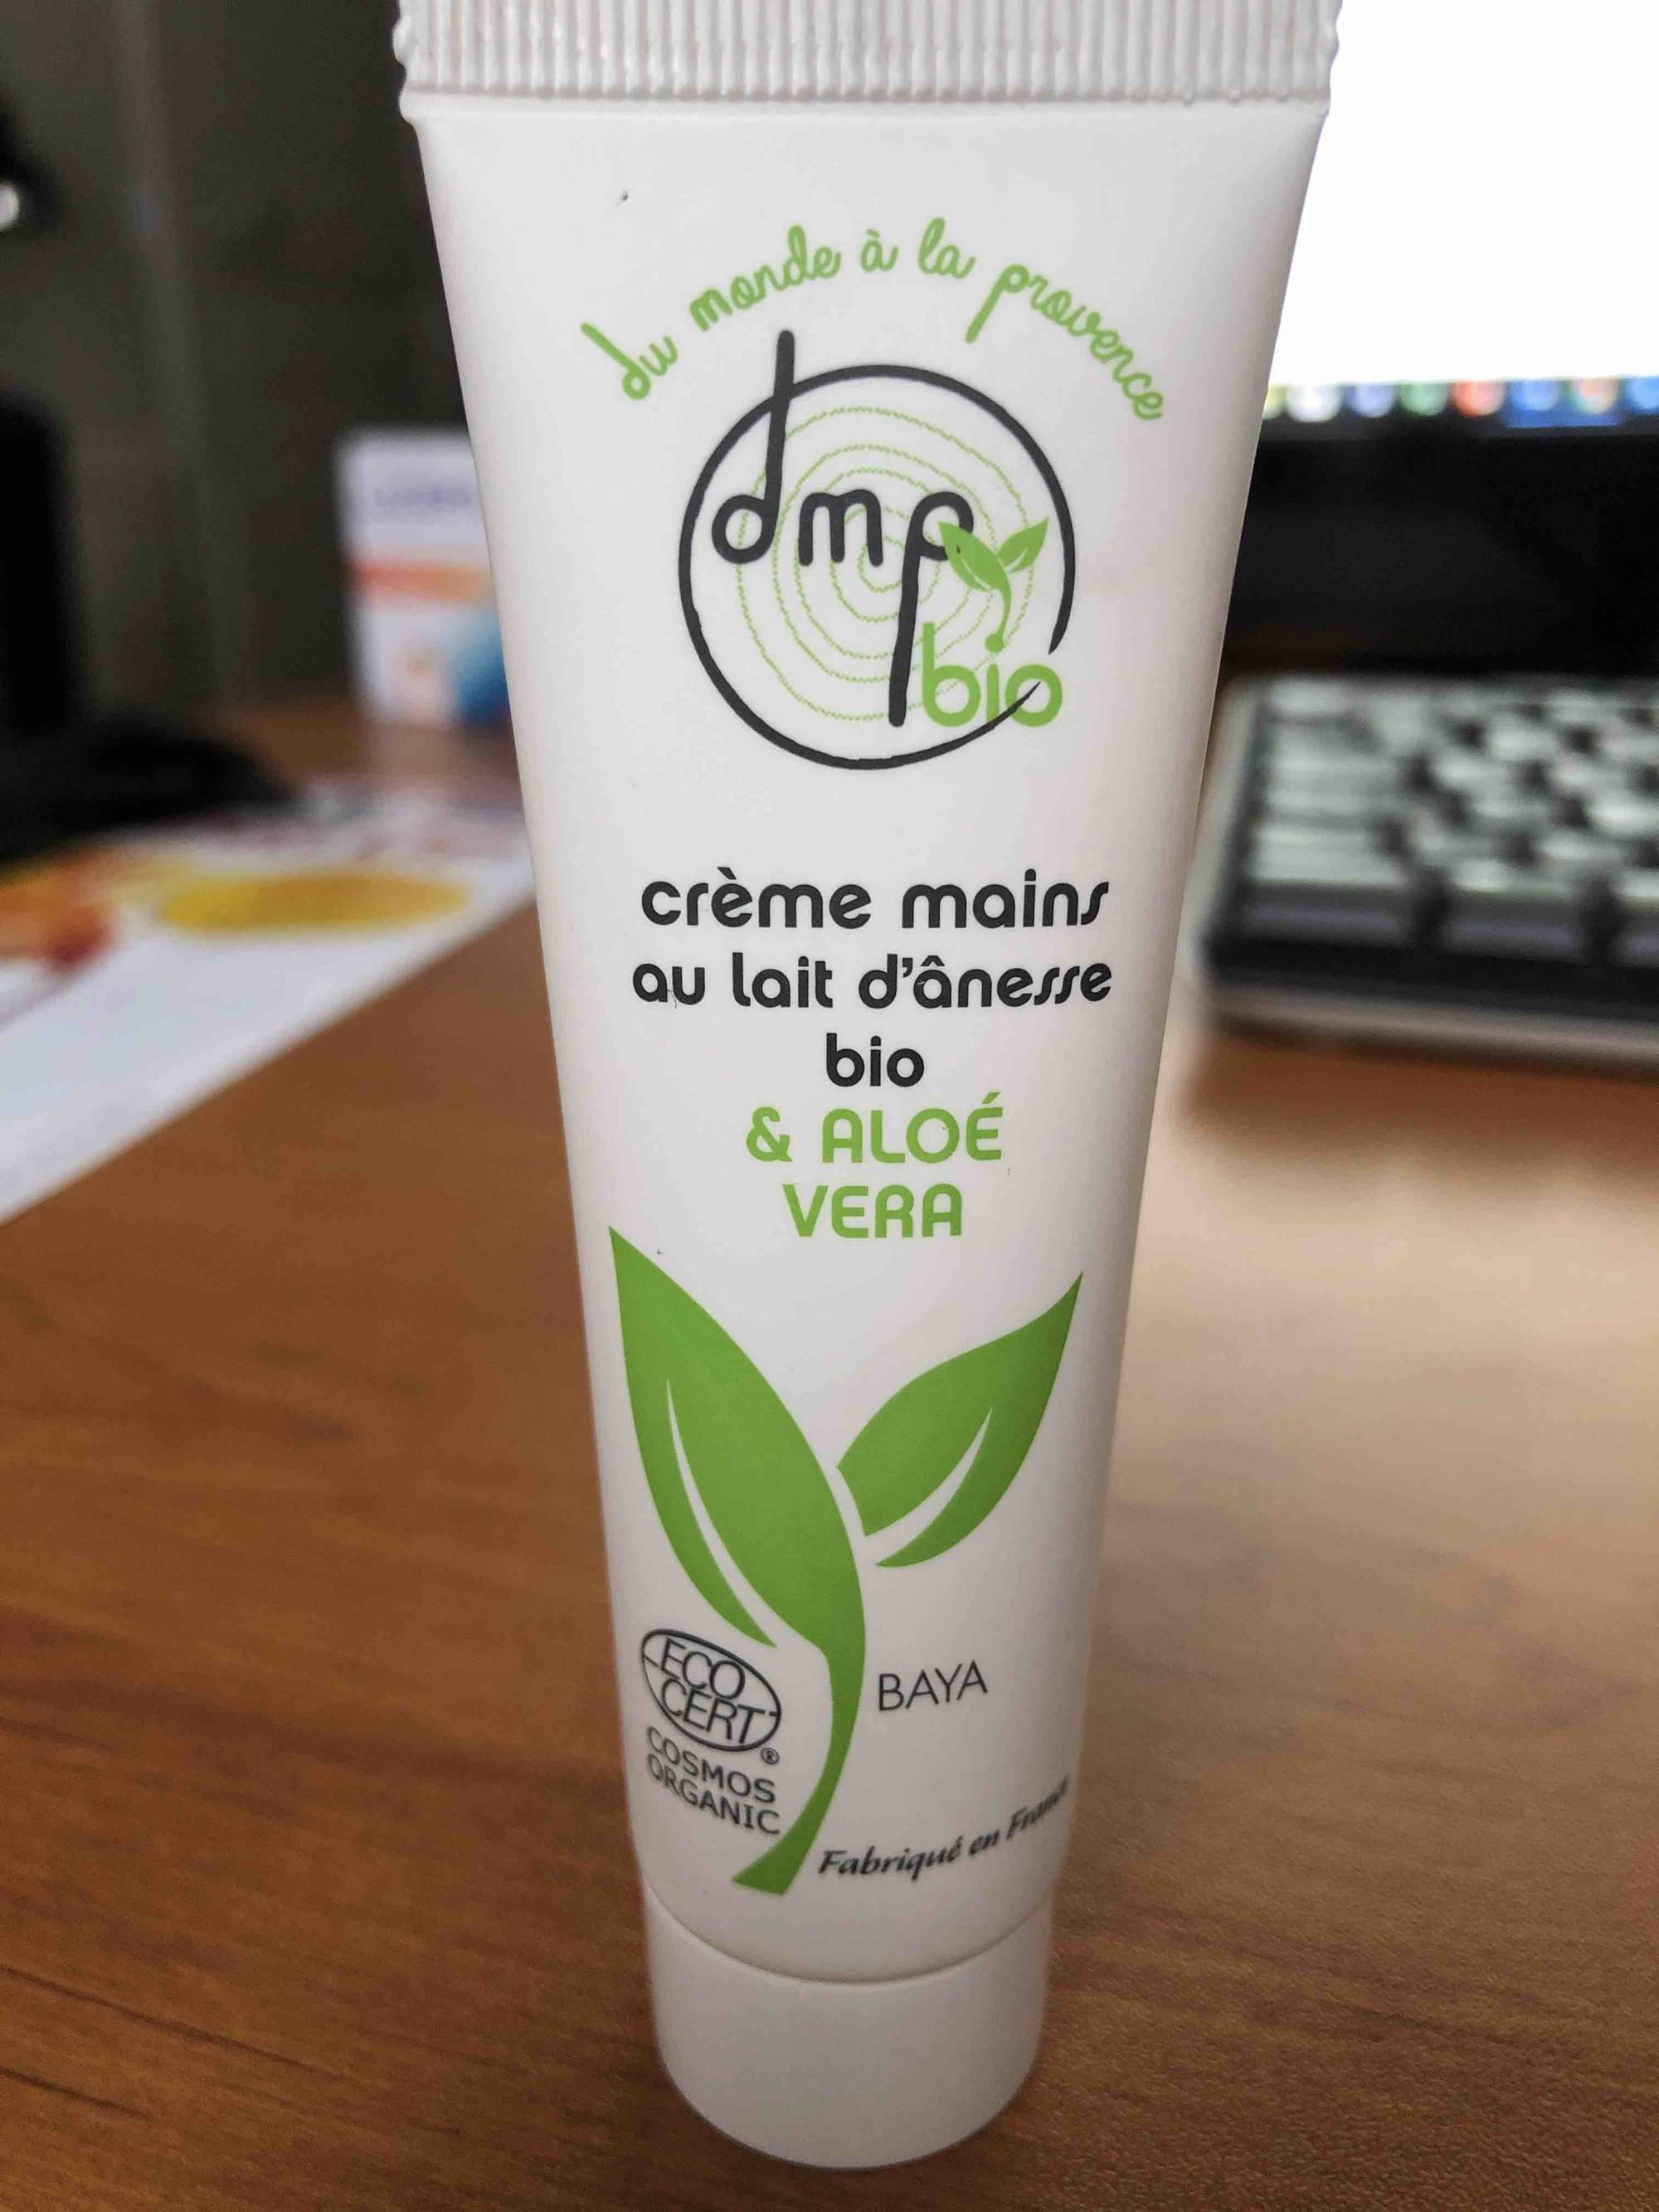 DMP DU MONDE EN PROVENCE - Crème mains au lait d'ânesse bio & aloé vera